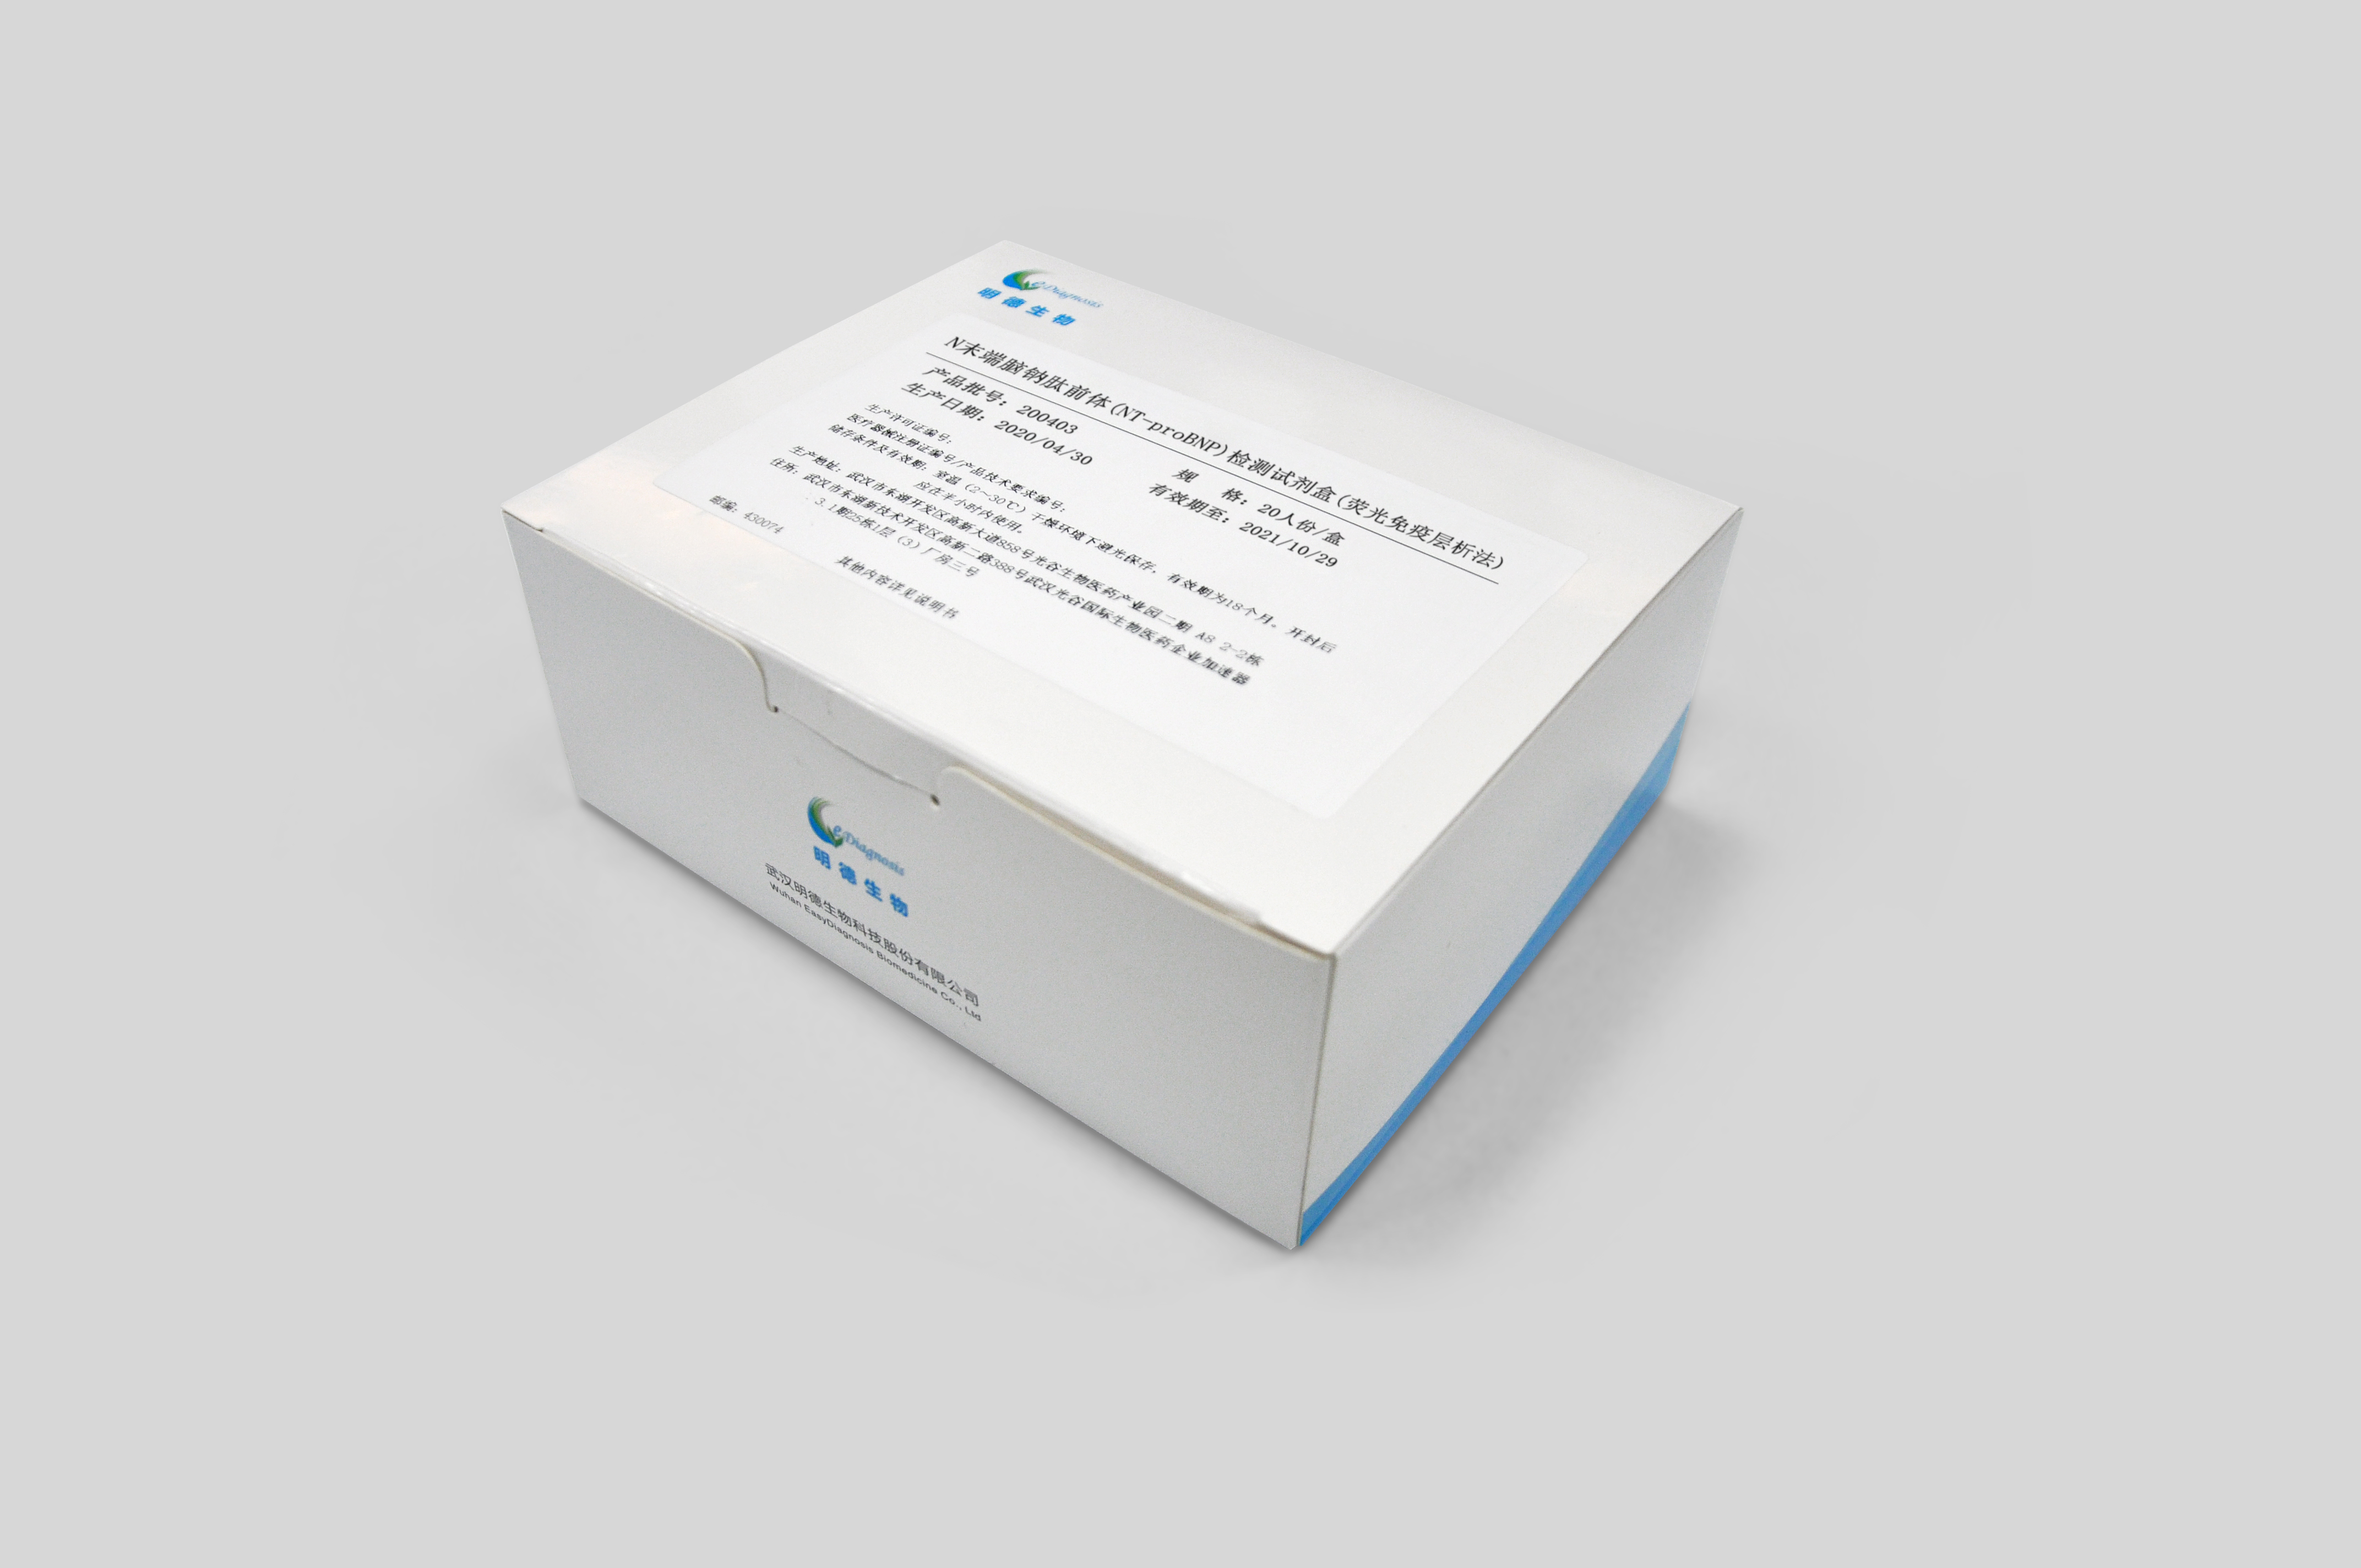 【明德】N末端脑钠肽前体(NT-proBNP)检测试剂盒(荧光免疫层析法) / 20人份/盒、40人份/盒